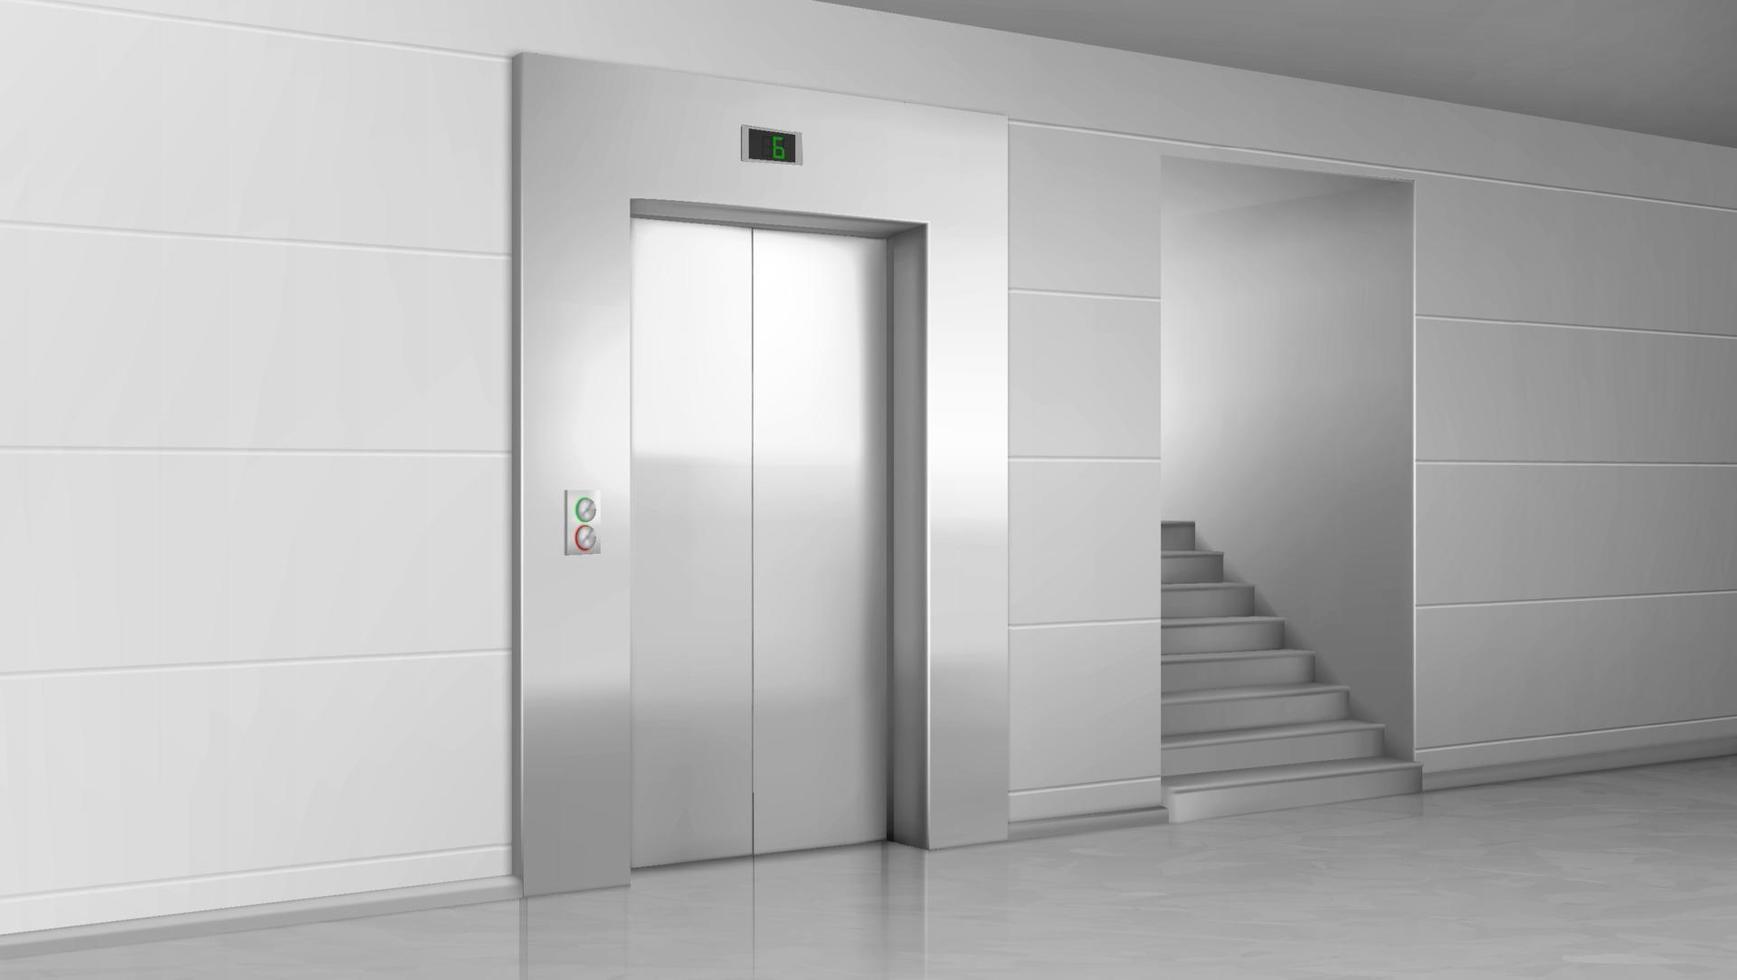 Aufzugstür und Treppe in der Lobby, geschlossener Aufzug vektor